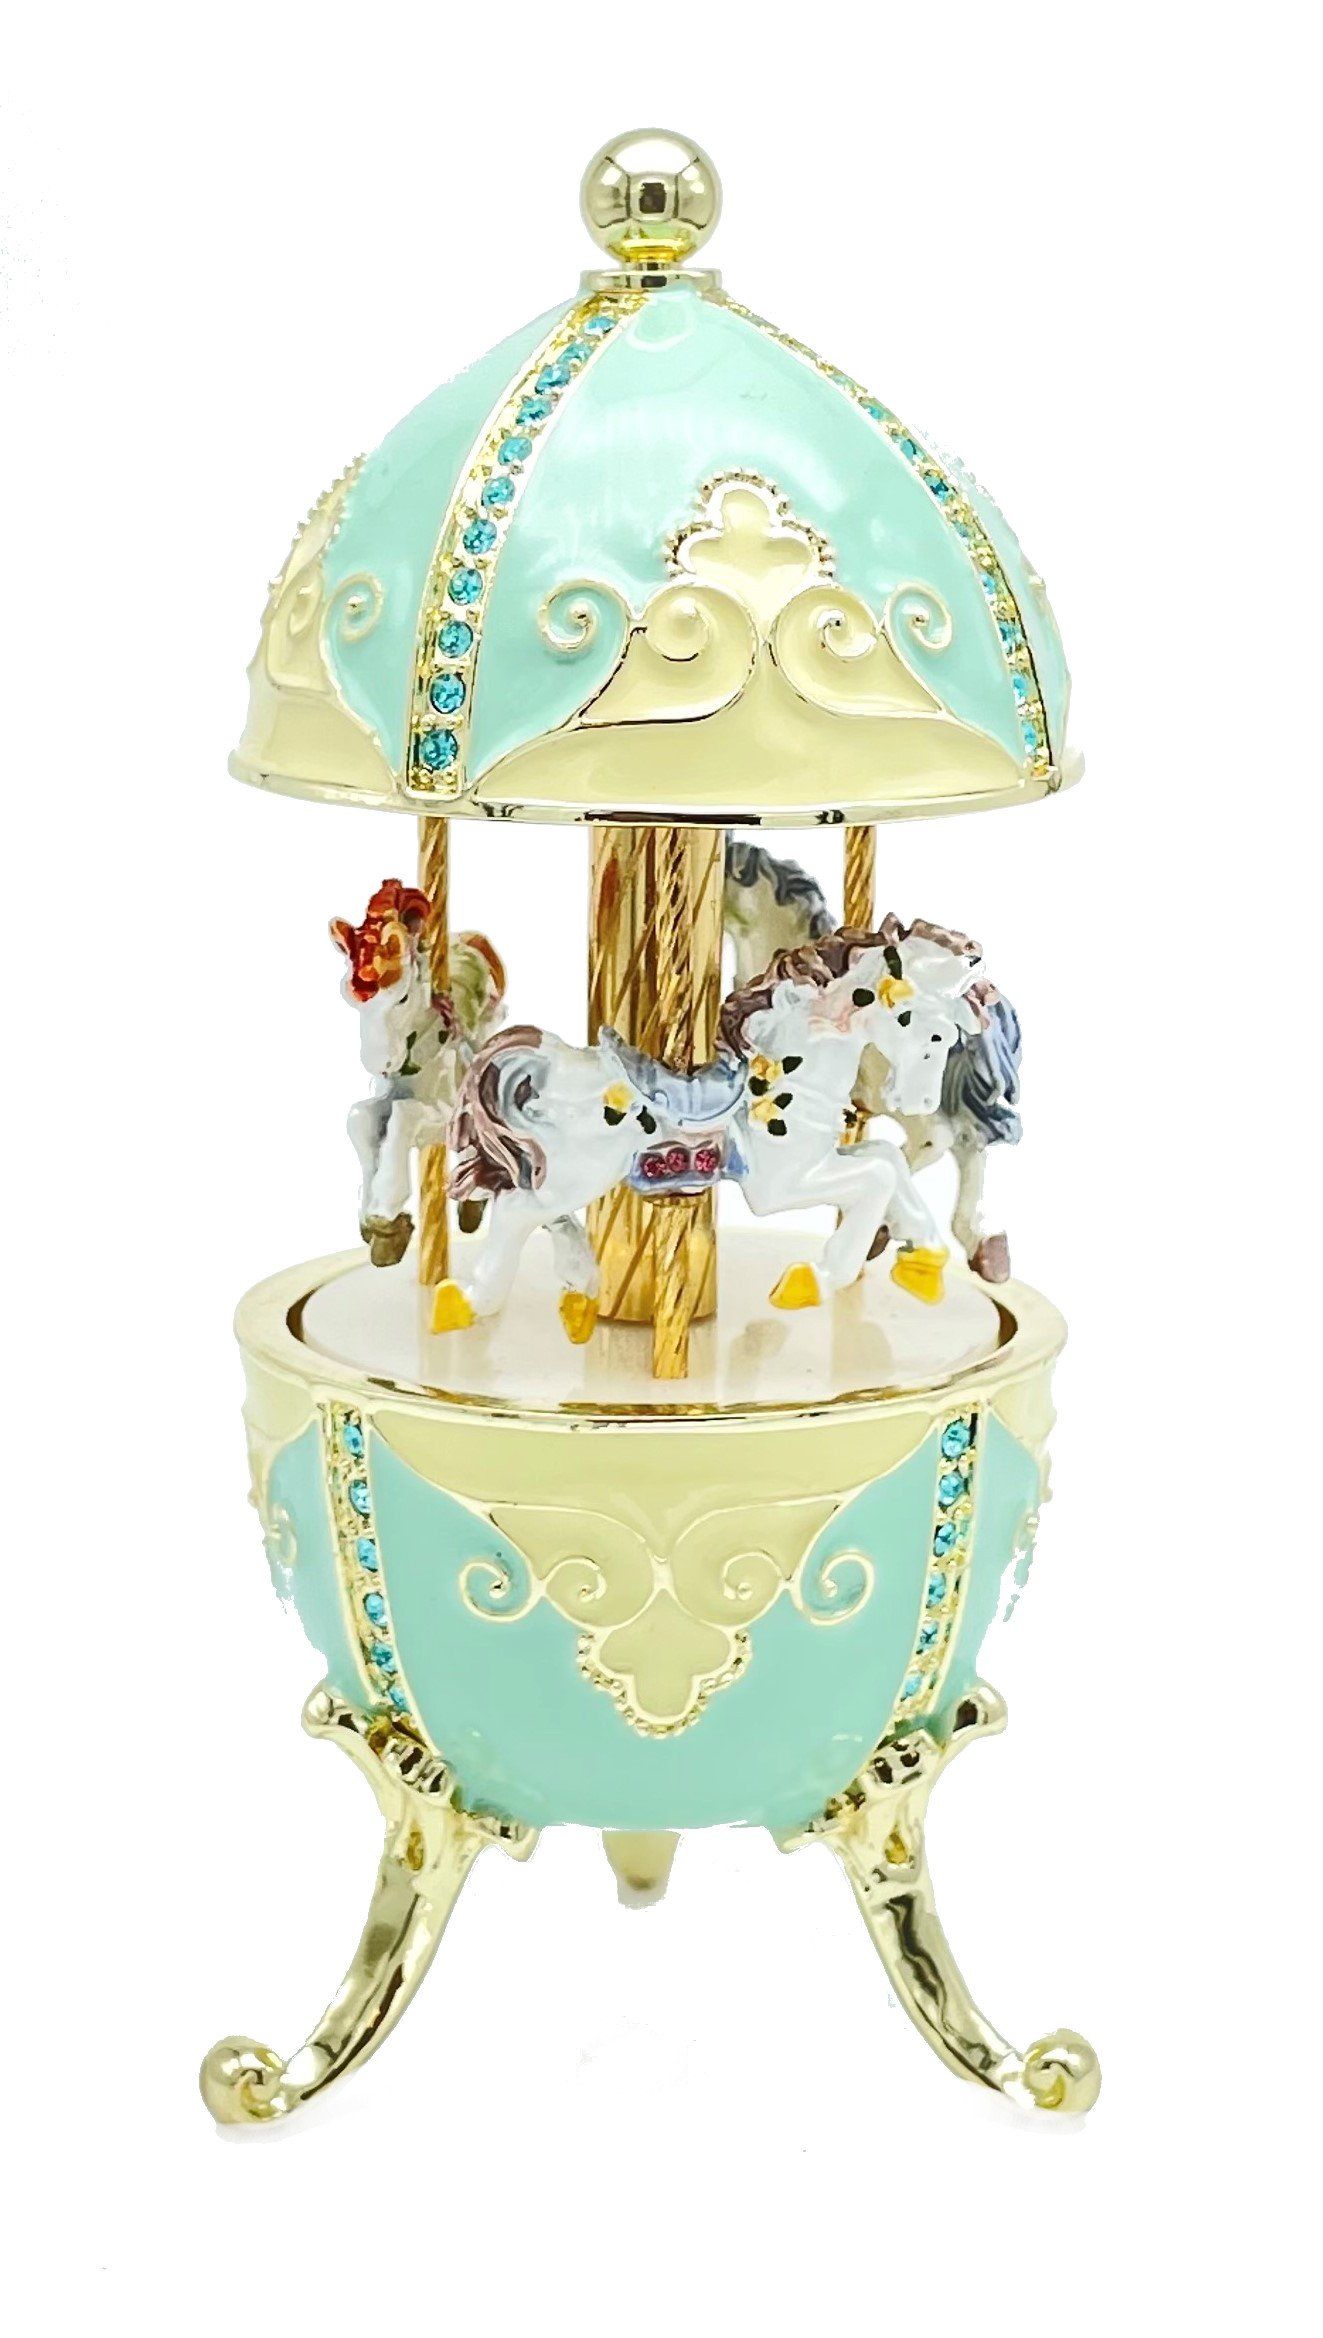 Turquoise Musical Carousel with Royal Horses Easter Egg Keren Kopal